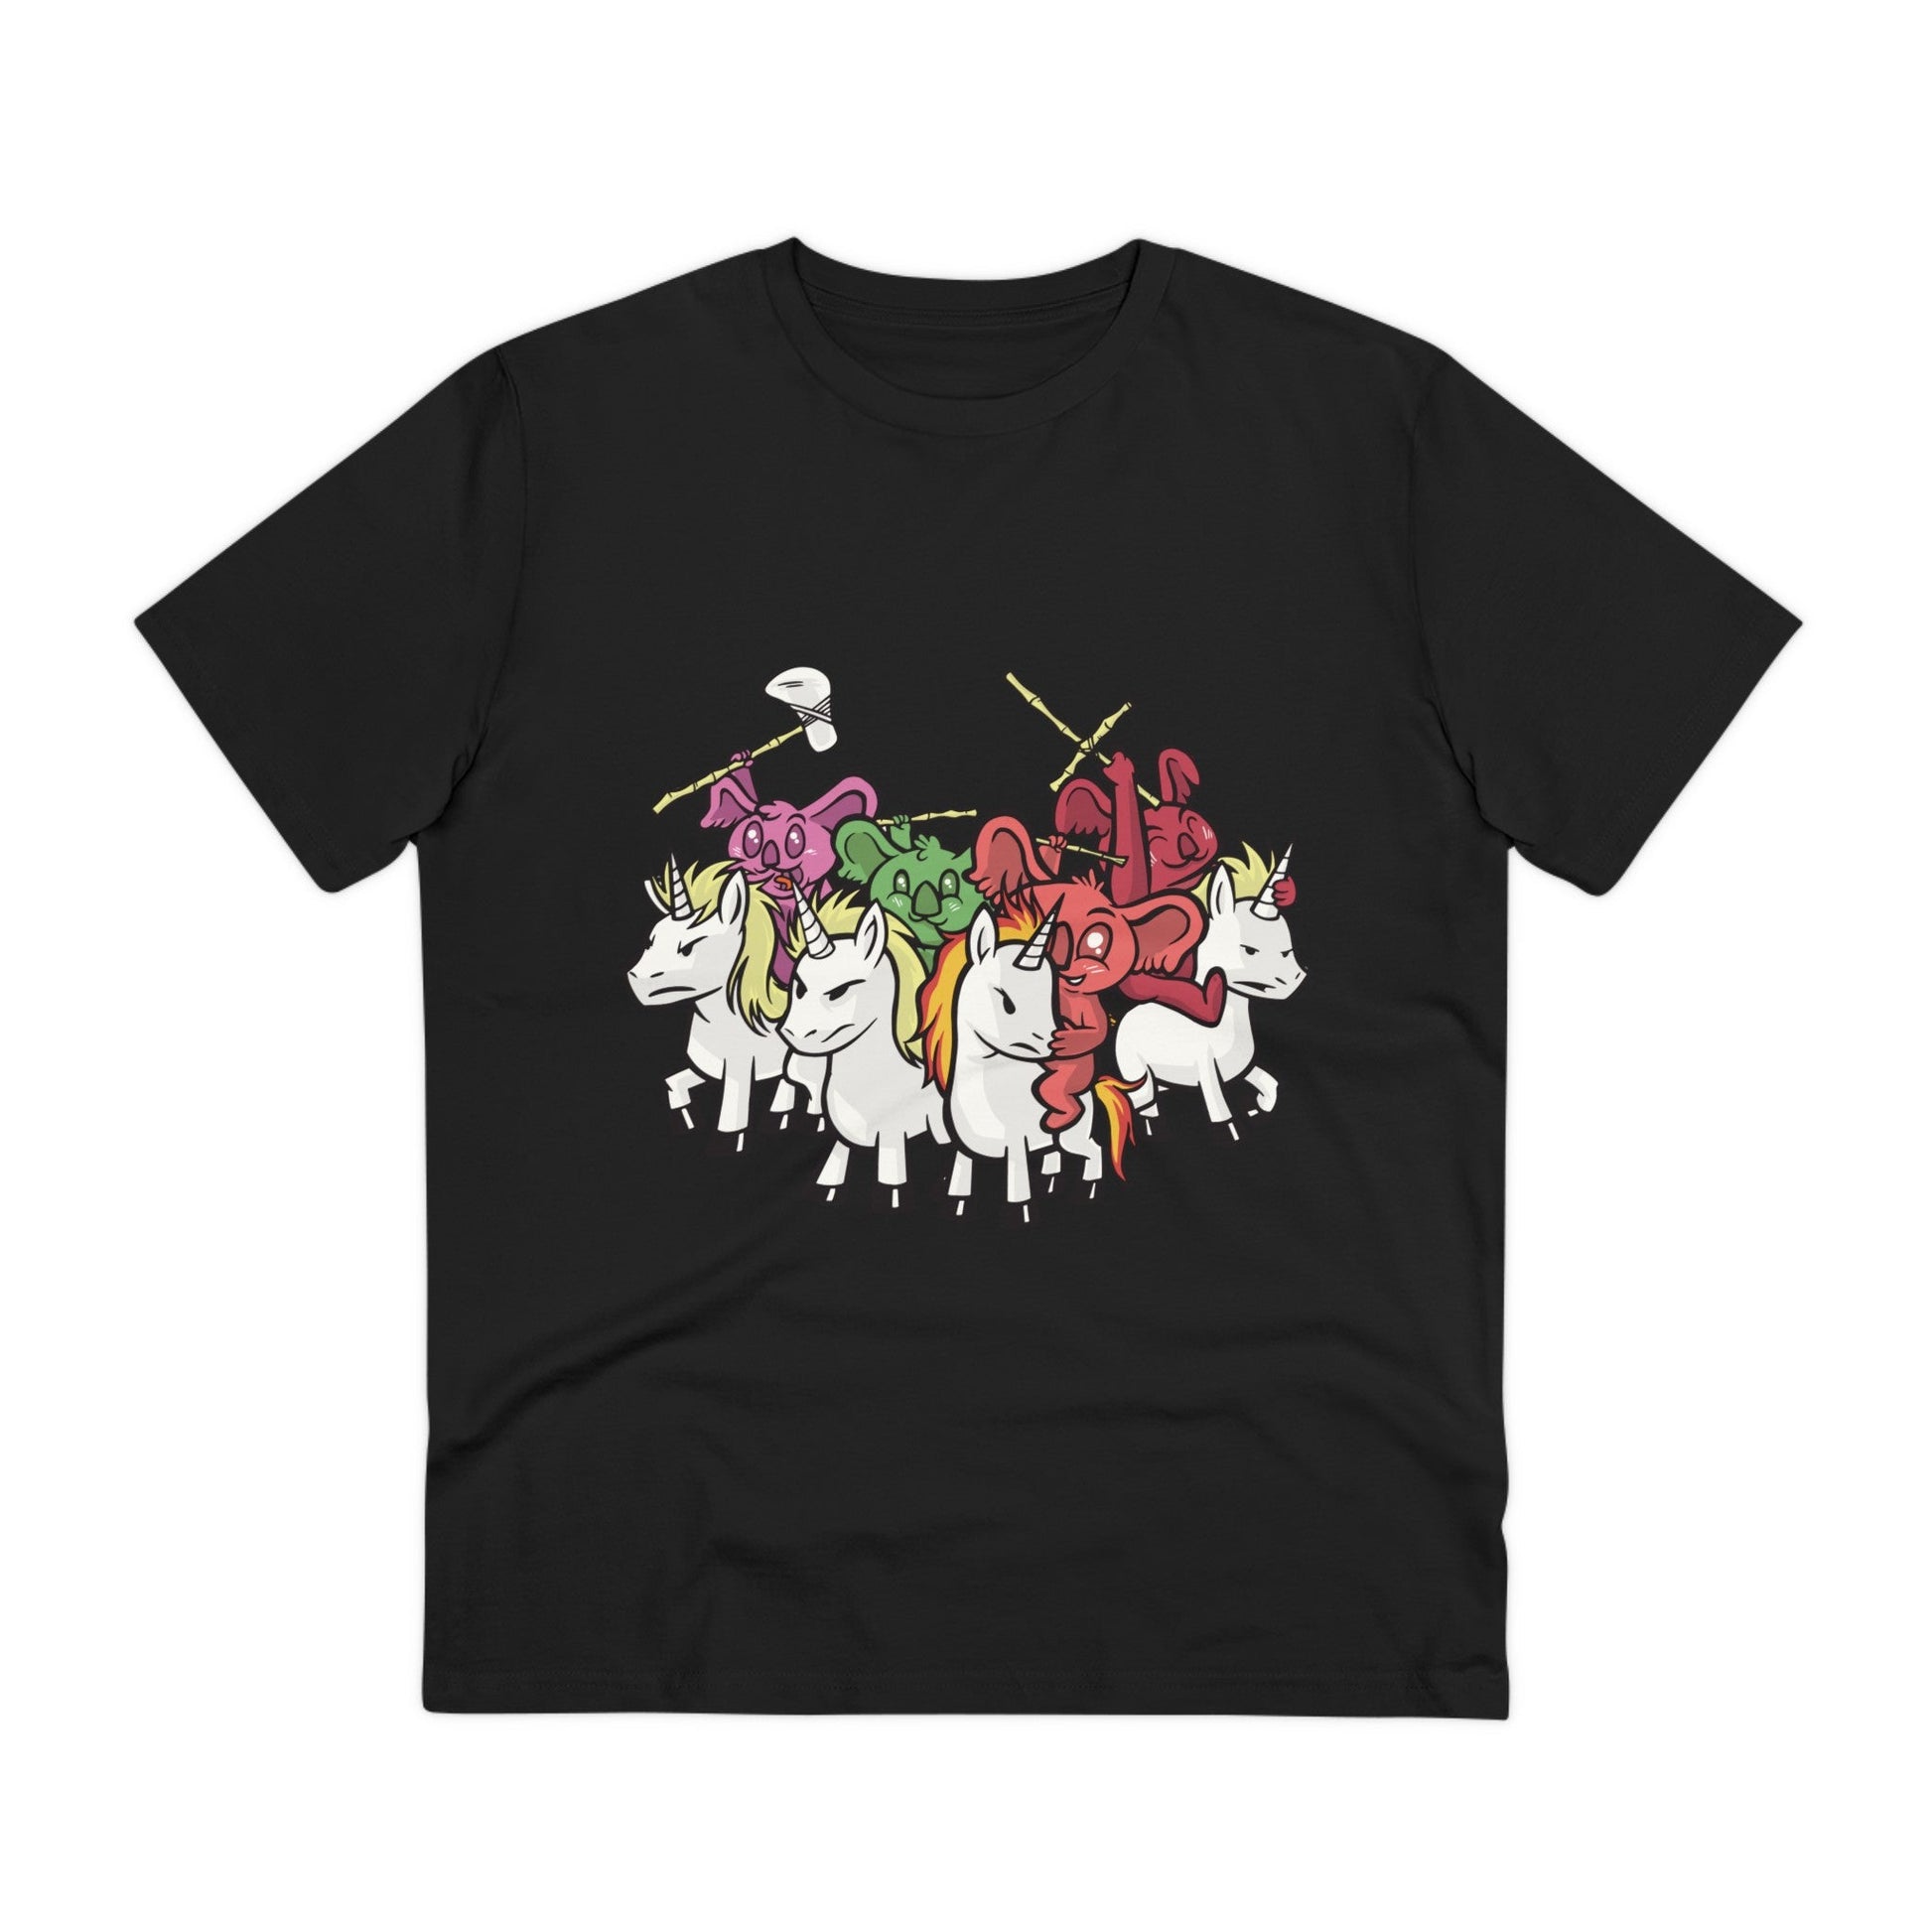 Printify T-Shirt Black / 2XS Koala Knights with Unicorns - Unicorn World - Front Design